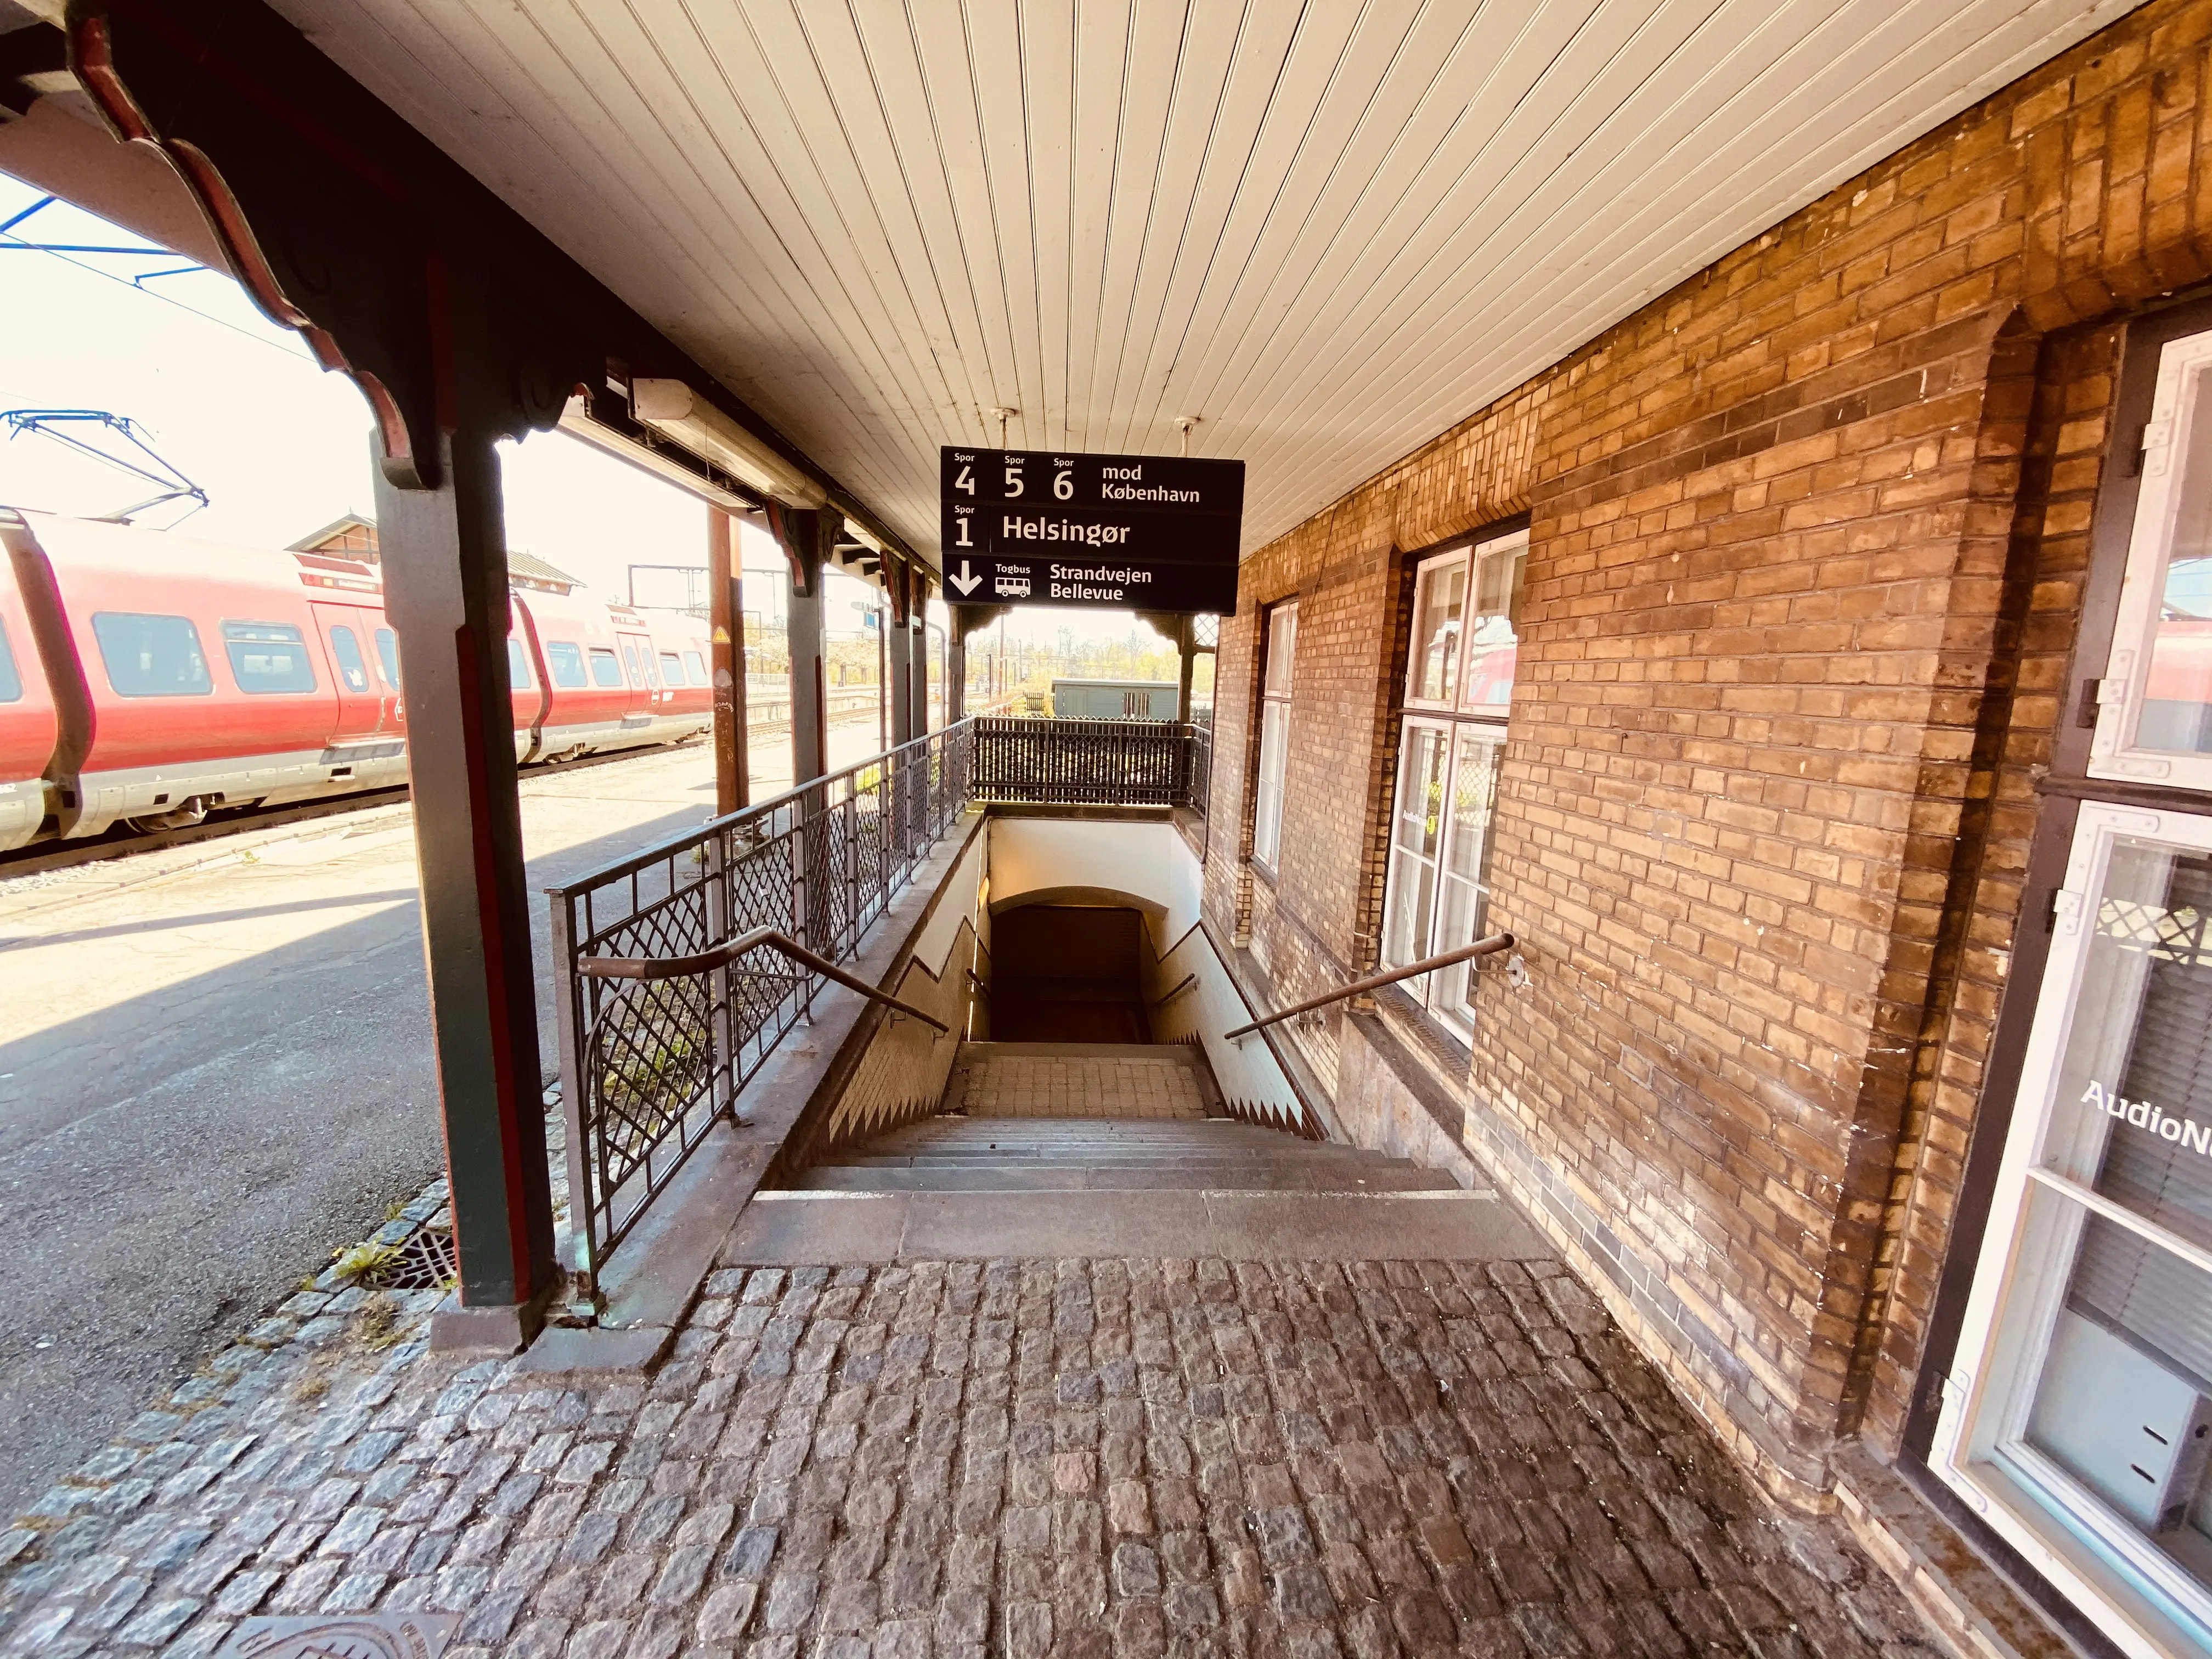 Billede af Klampenborg Station.